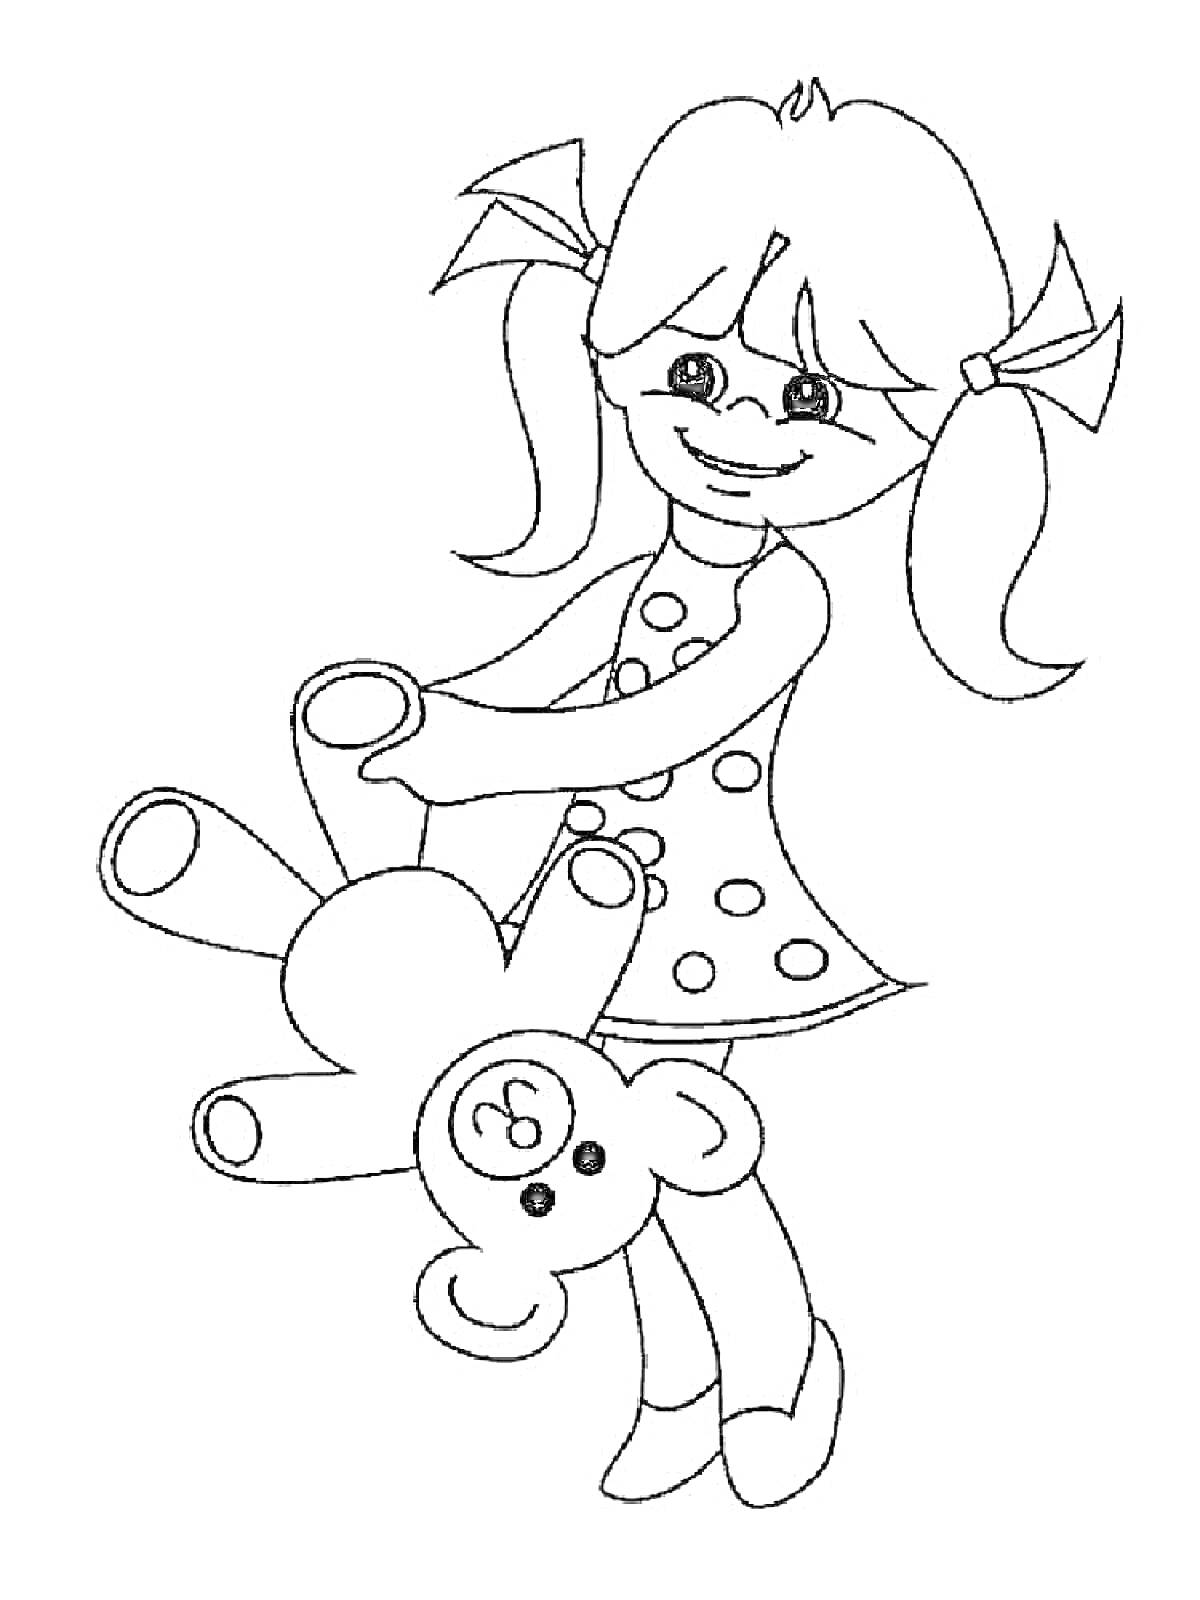 Раскраска Девочка с косичками в платье с горошком, держащая плюшевого мишку